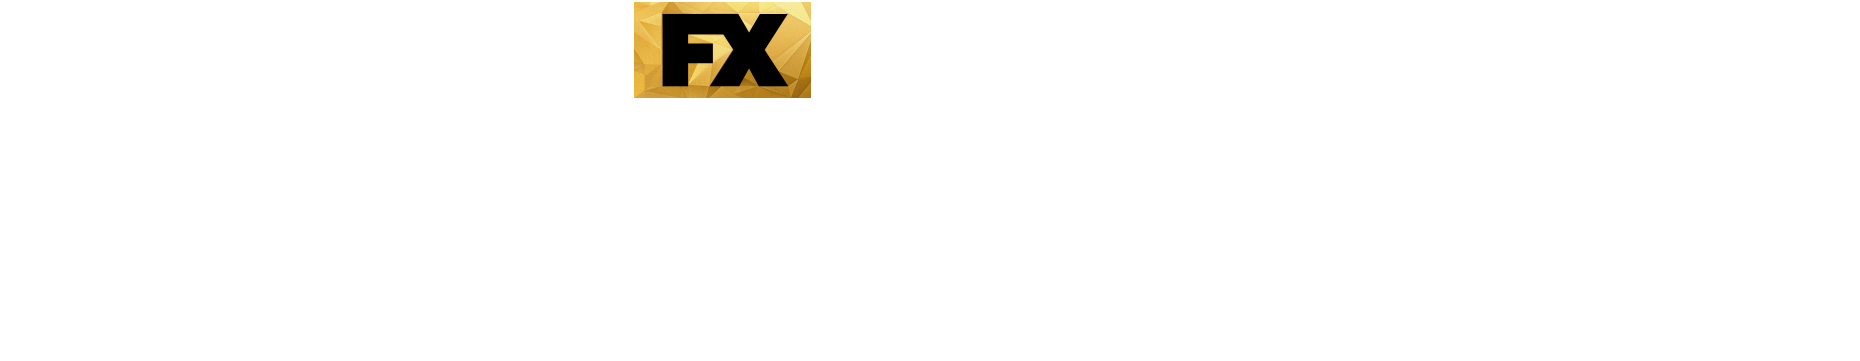 Dicktown Show Logo